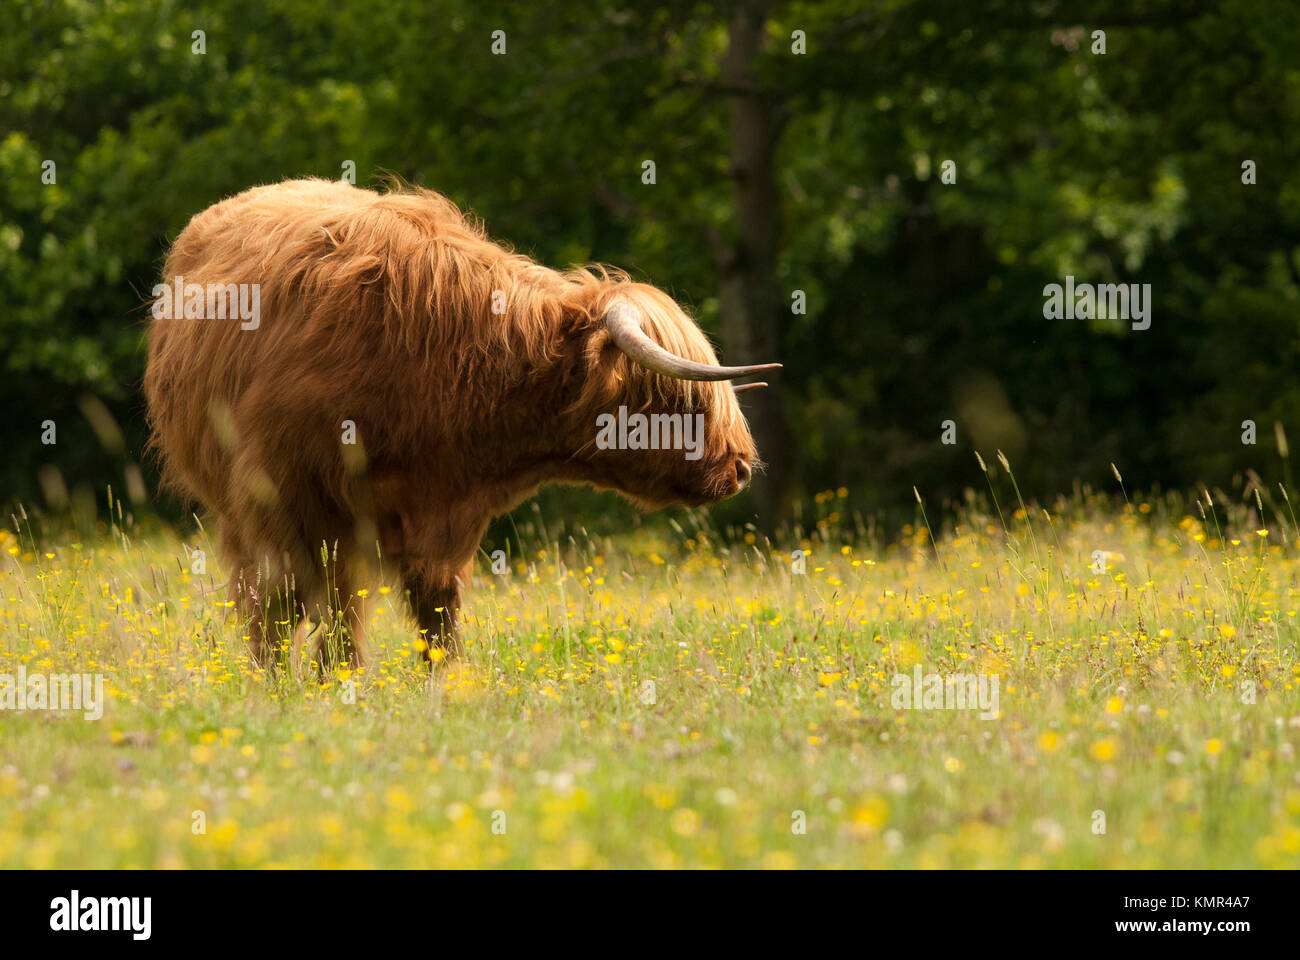 Originariamente il bestiame scozzese, questa immagine è stata catturata vicino a Brockenhurst nella nuova foresta, Hampshire. Foto Stock